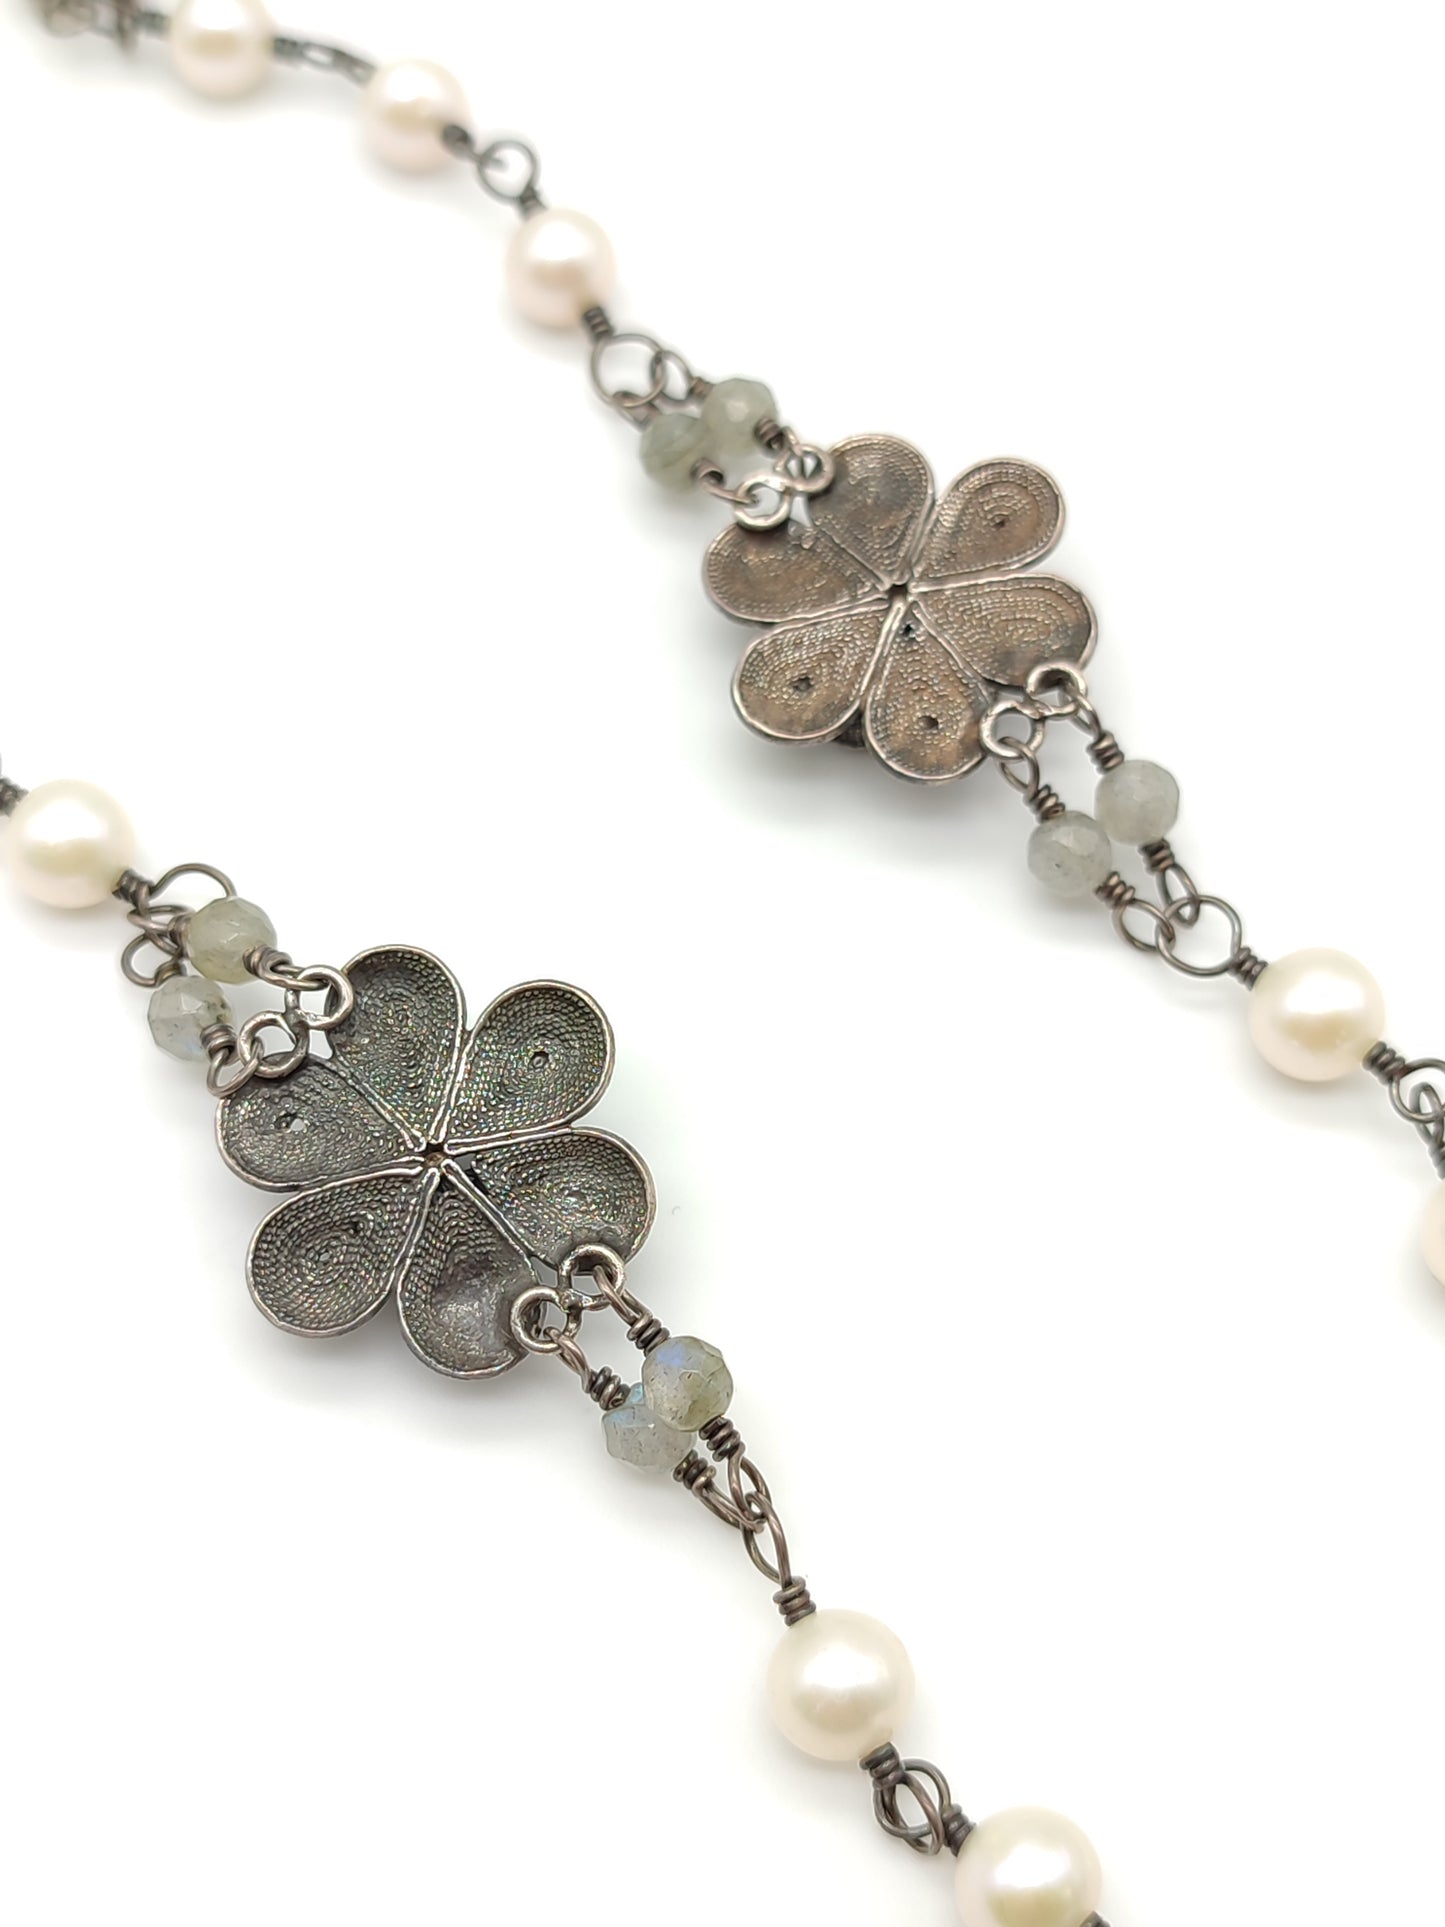 Collana in filigrana d'argento lunga con perle fiori e quarzi